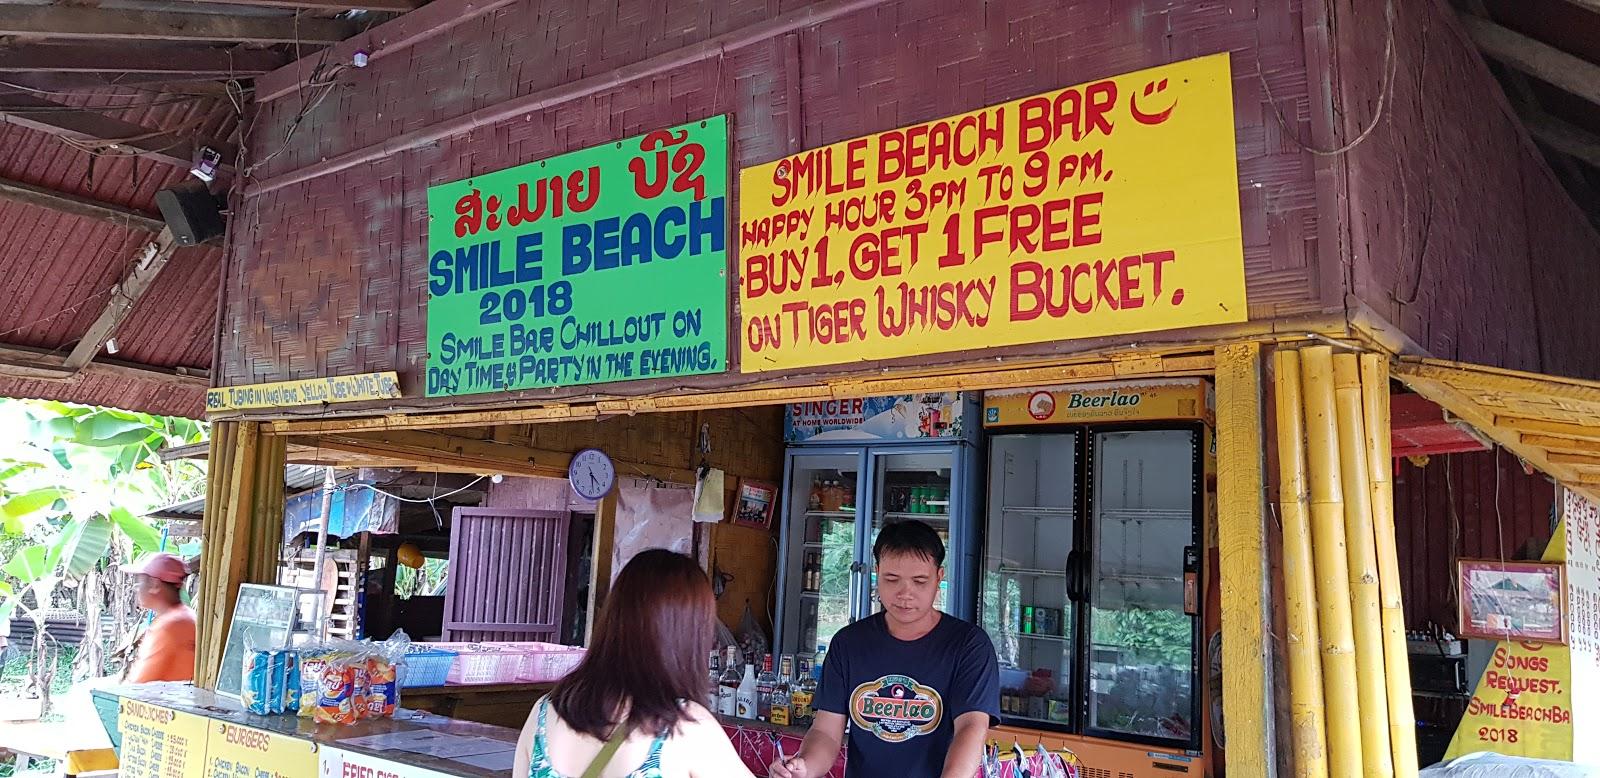 Sandee - Smile Beach Bar